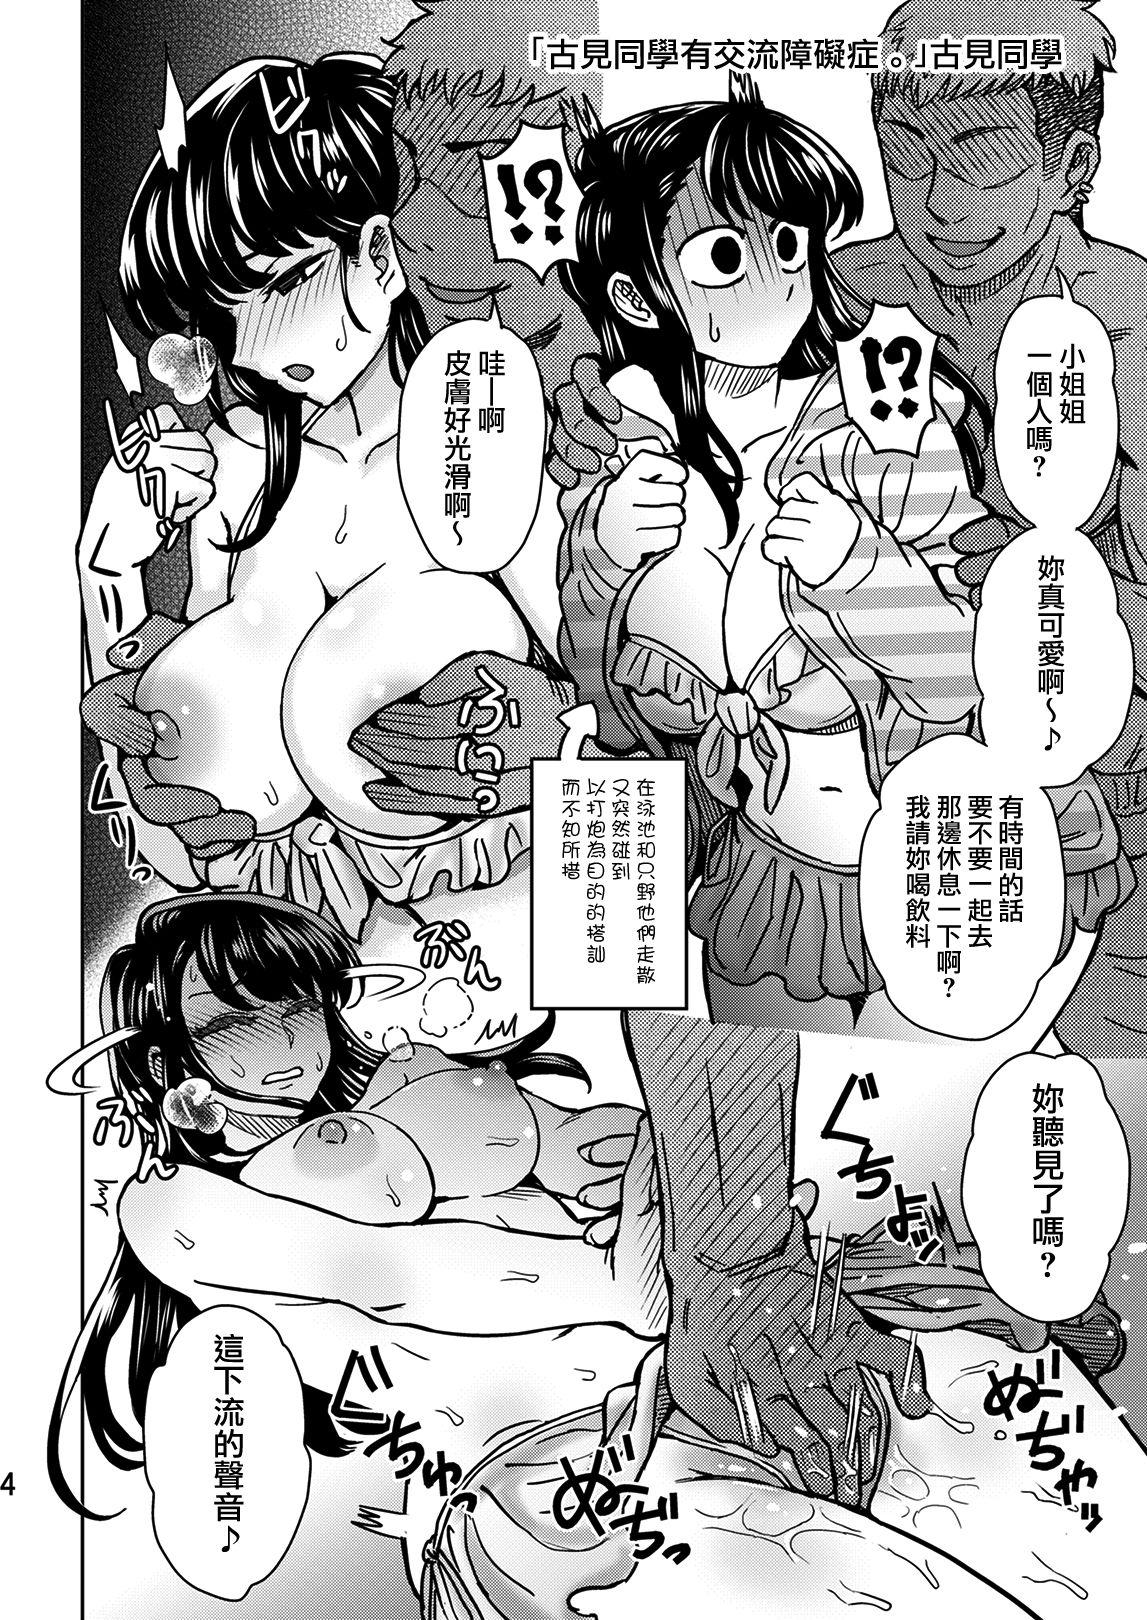 Eng Sub C95 Yorozu NTR Short Manga Shuu - Komi-san wa komyushou desu. Polish - Page 5